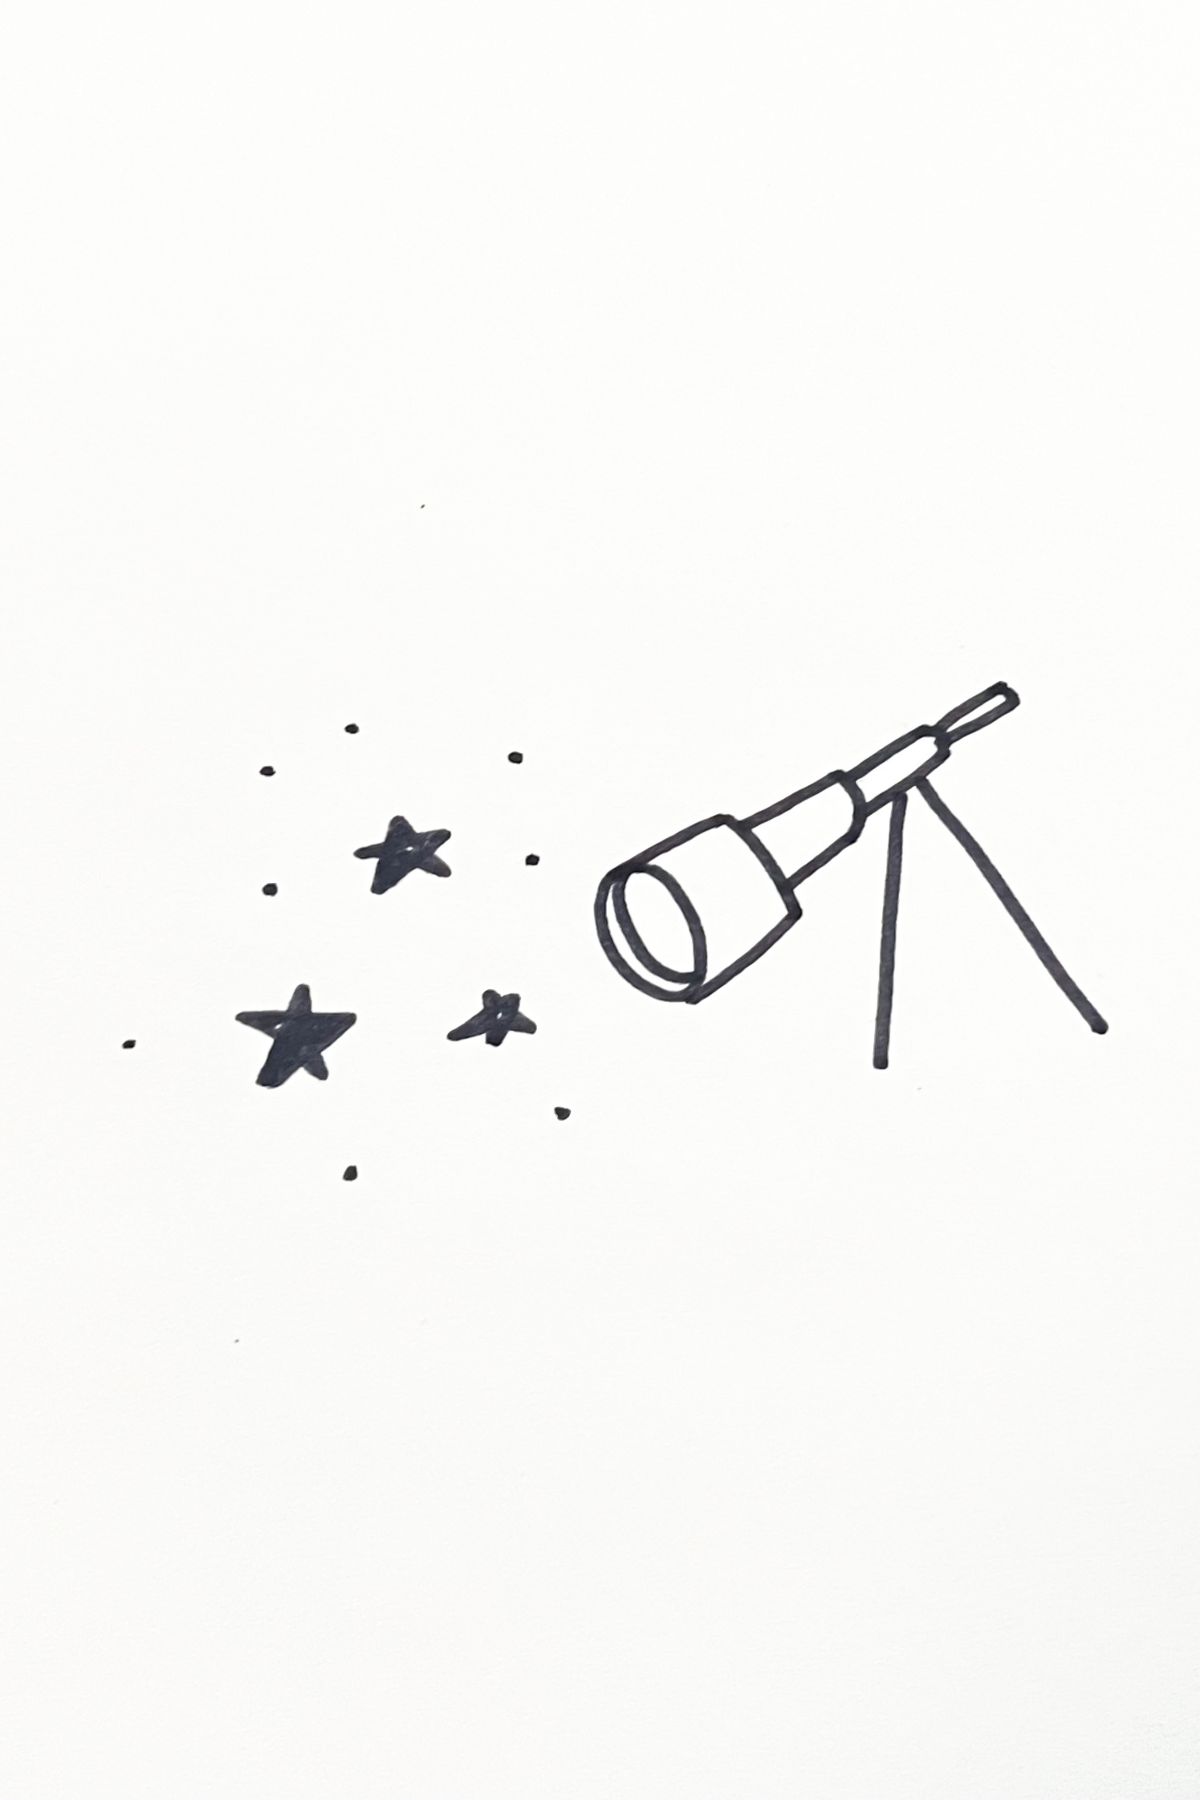 telescope drawing idea